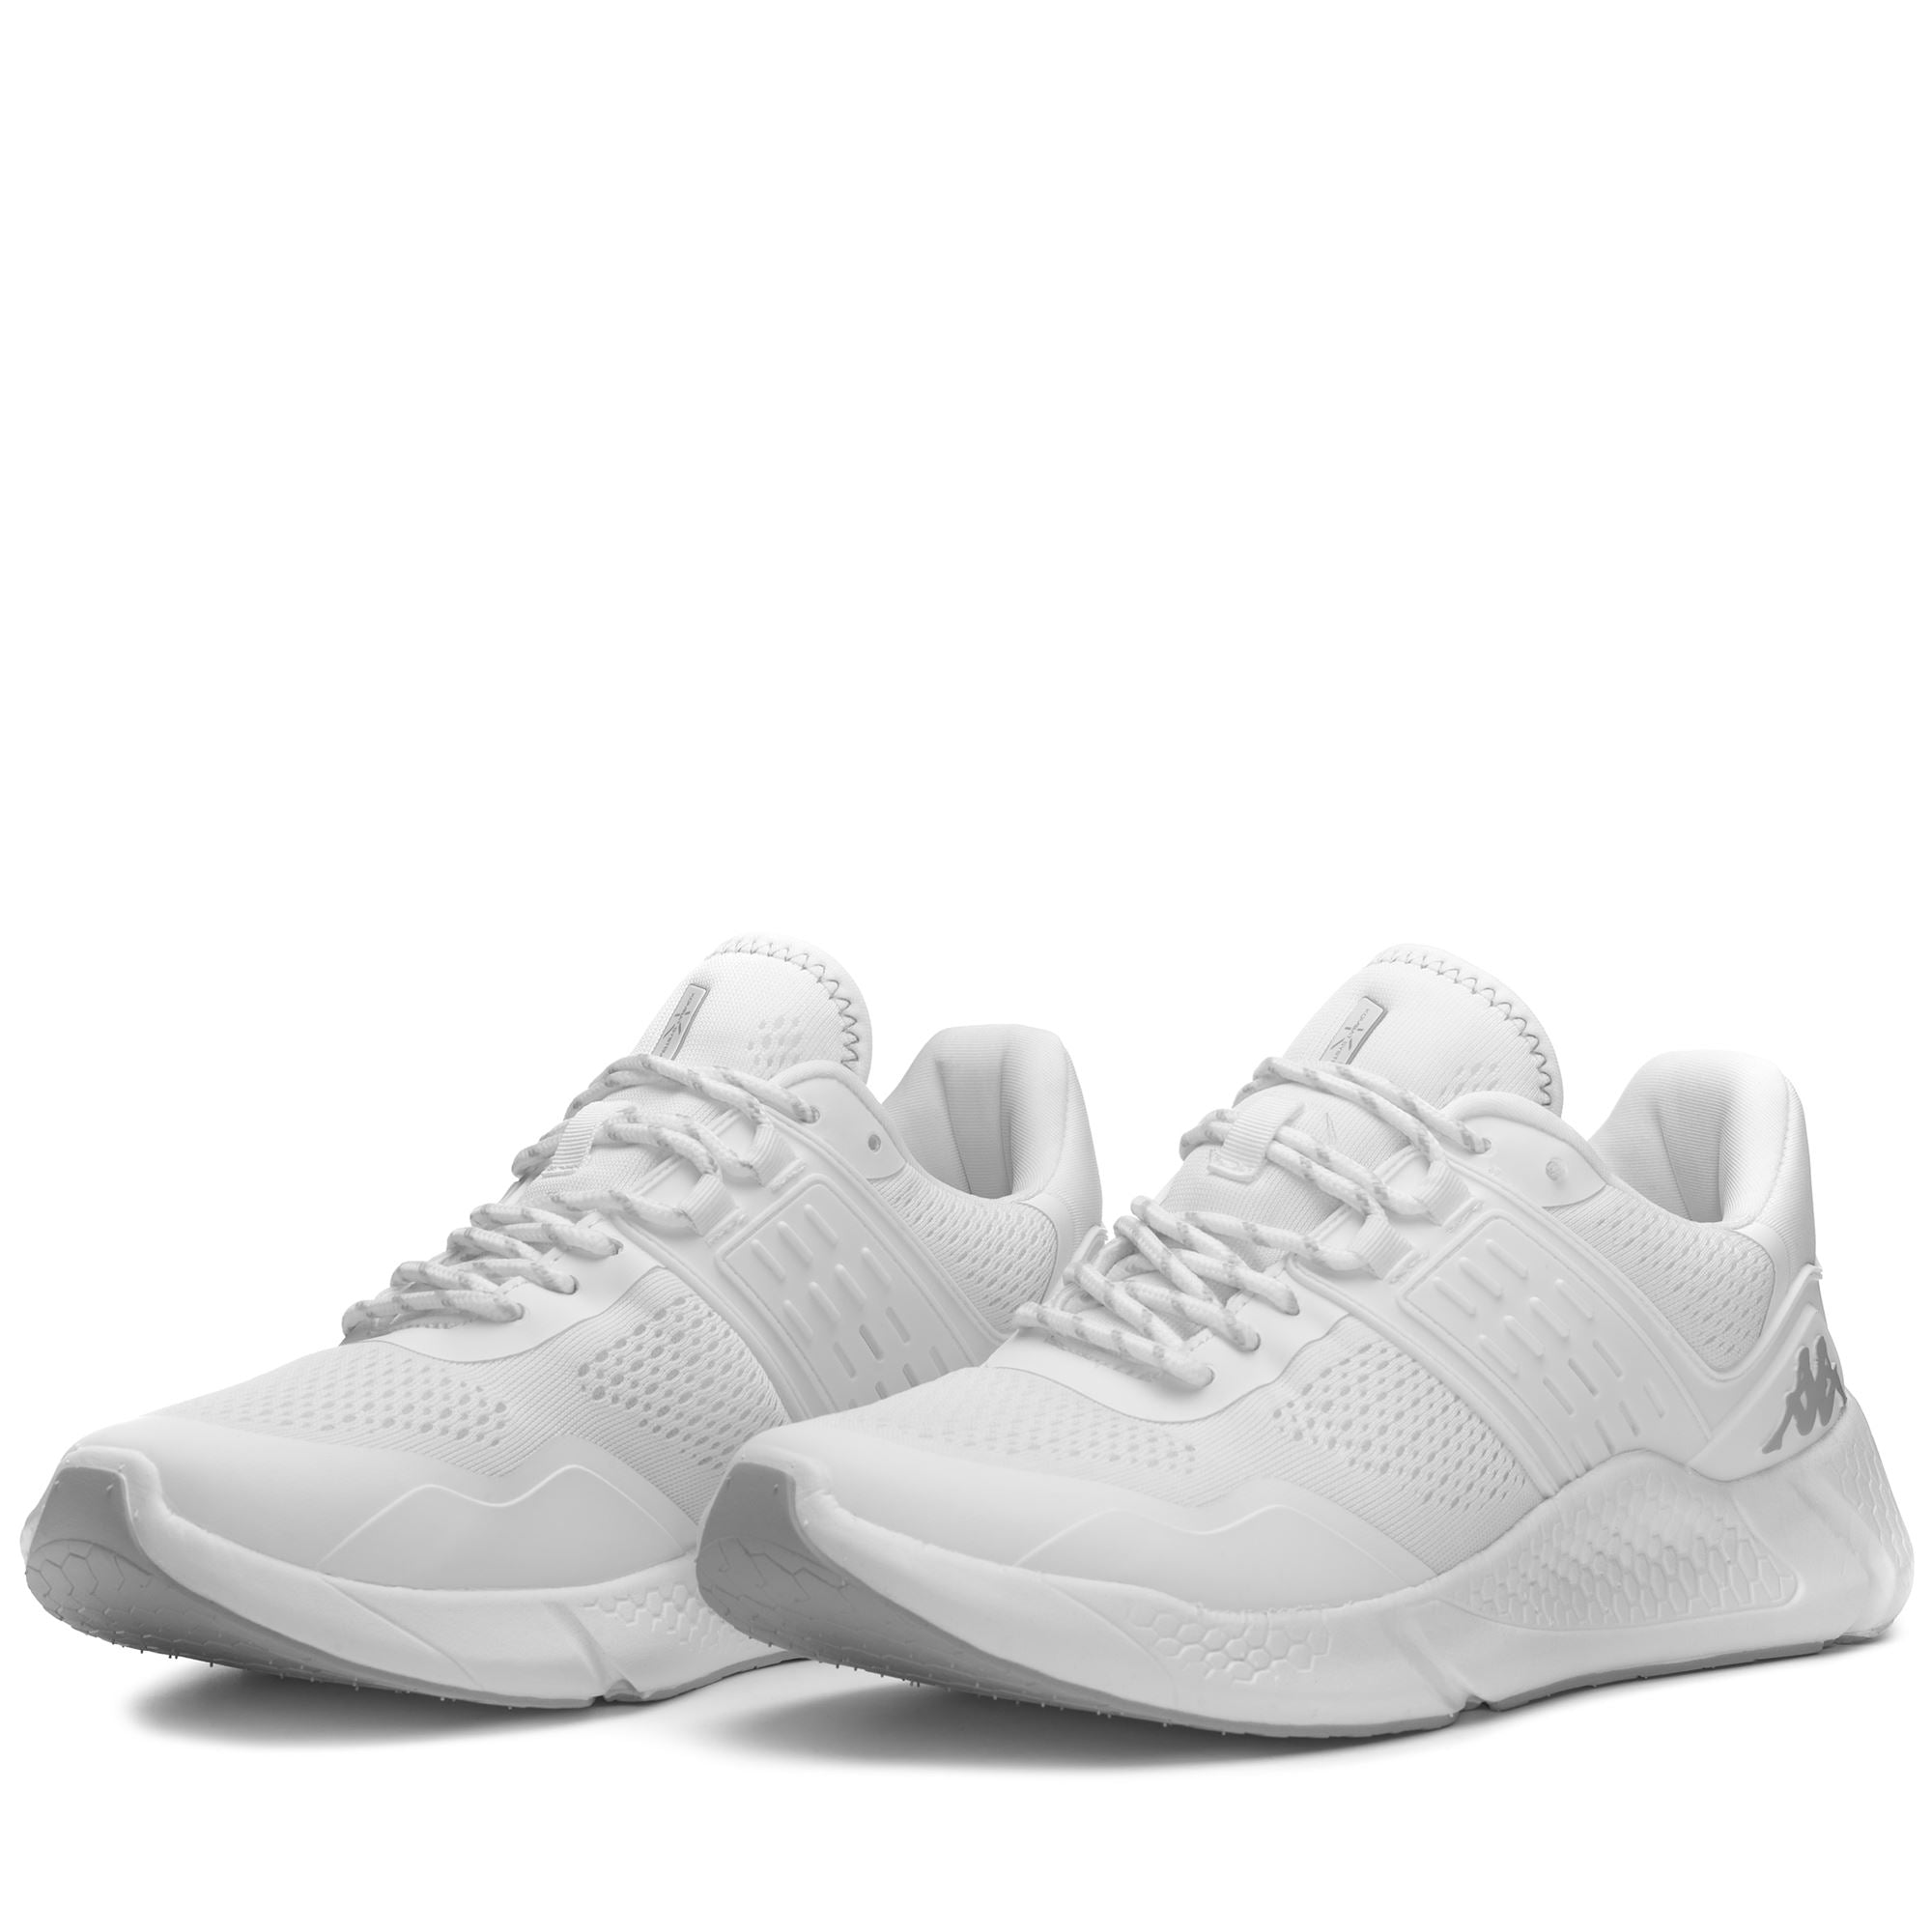 KOMBAT CLEAN - Sport Shoes - Low Cut - Unisex - WHITE